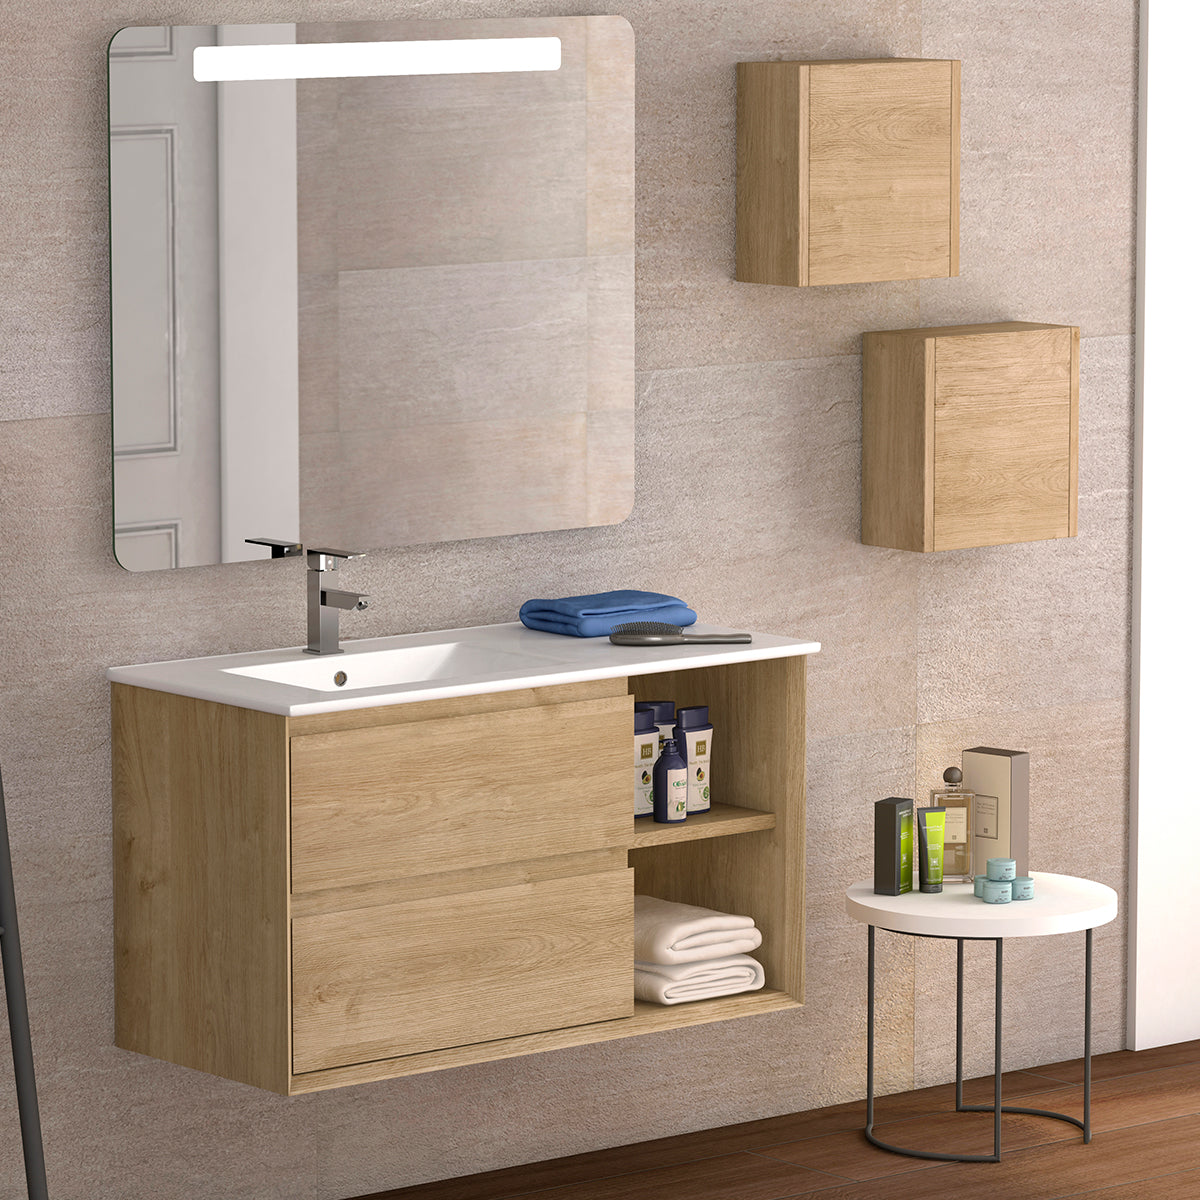 Kios G.16 Ginza Composición de baño con base baja de 4 cajones, 3 muebles  altos de 1 puerta, espejo vertical, foco de led y tapa de cristal para  lavabo sobre encimera